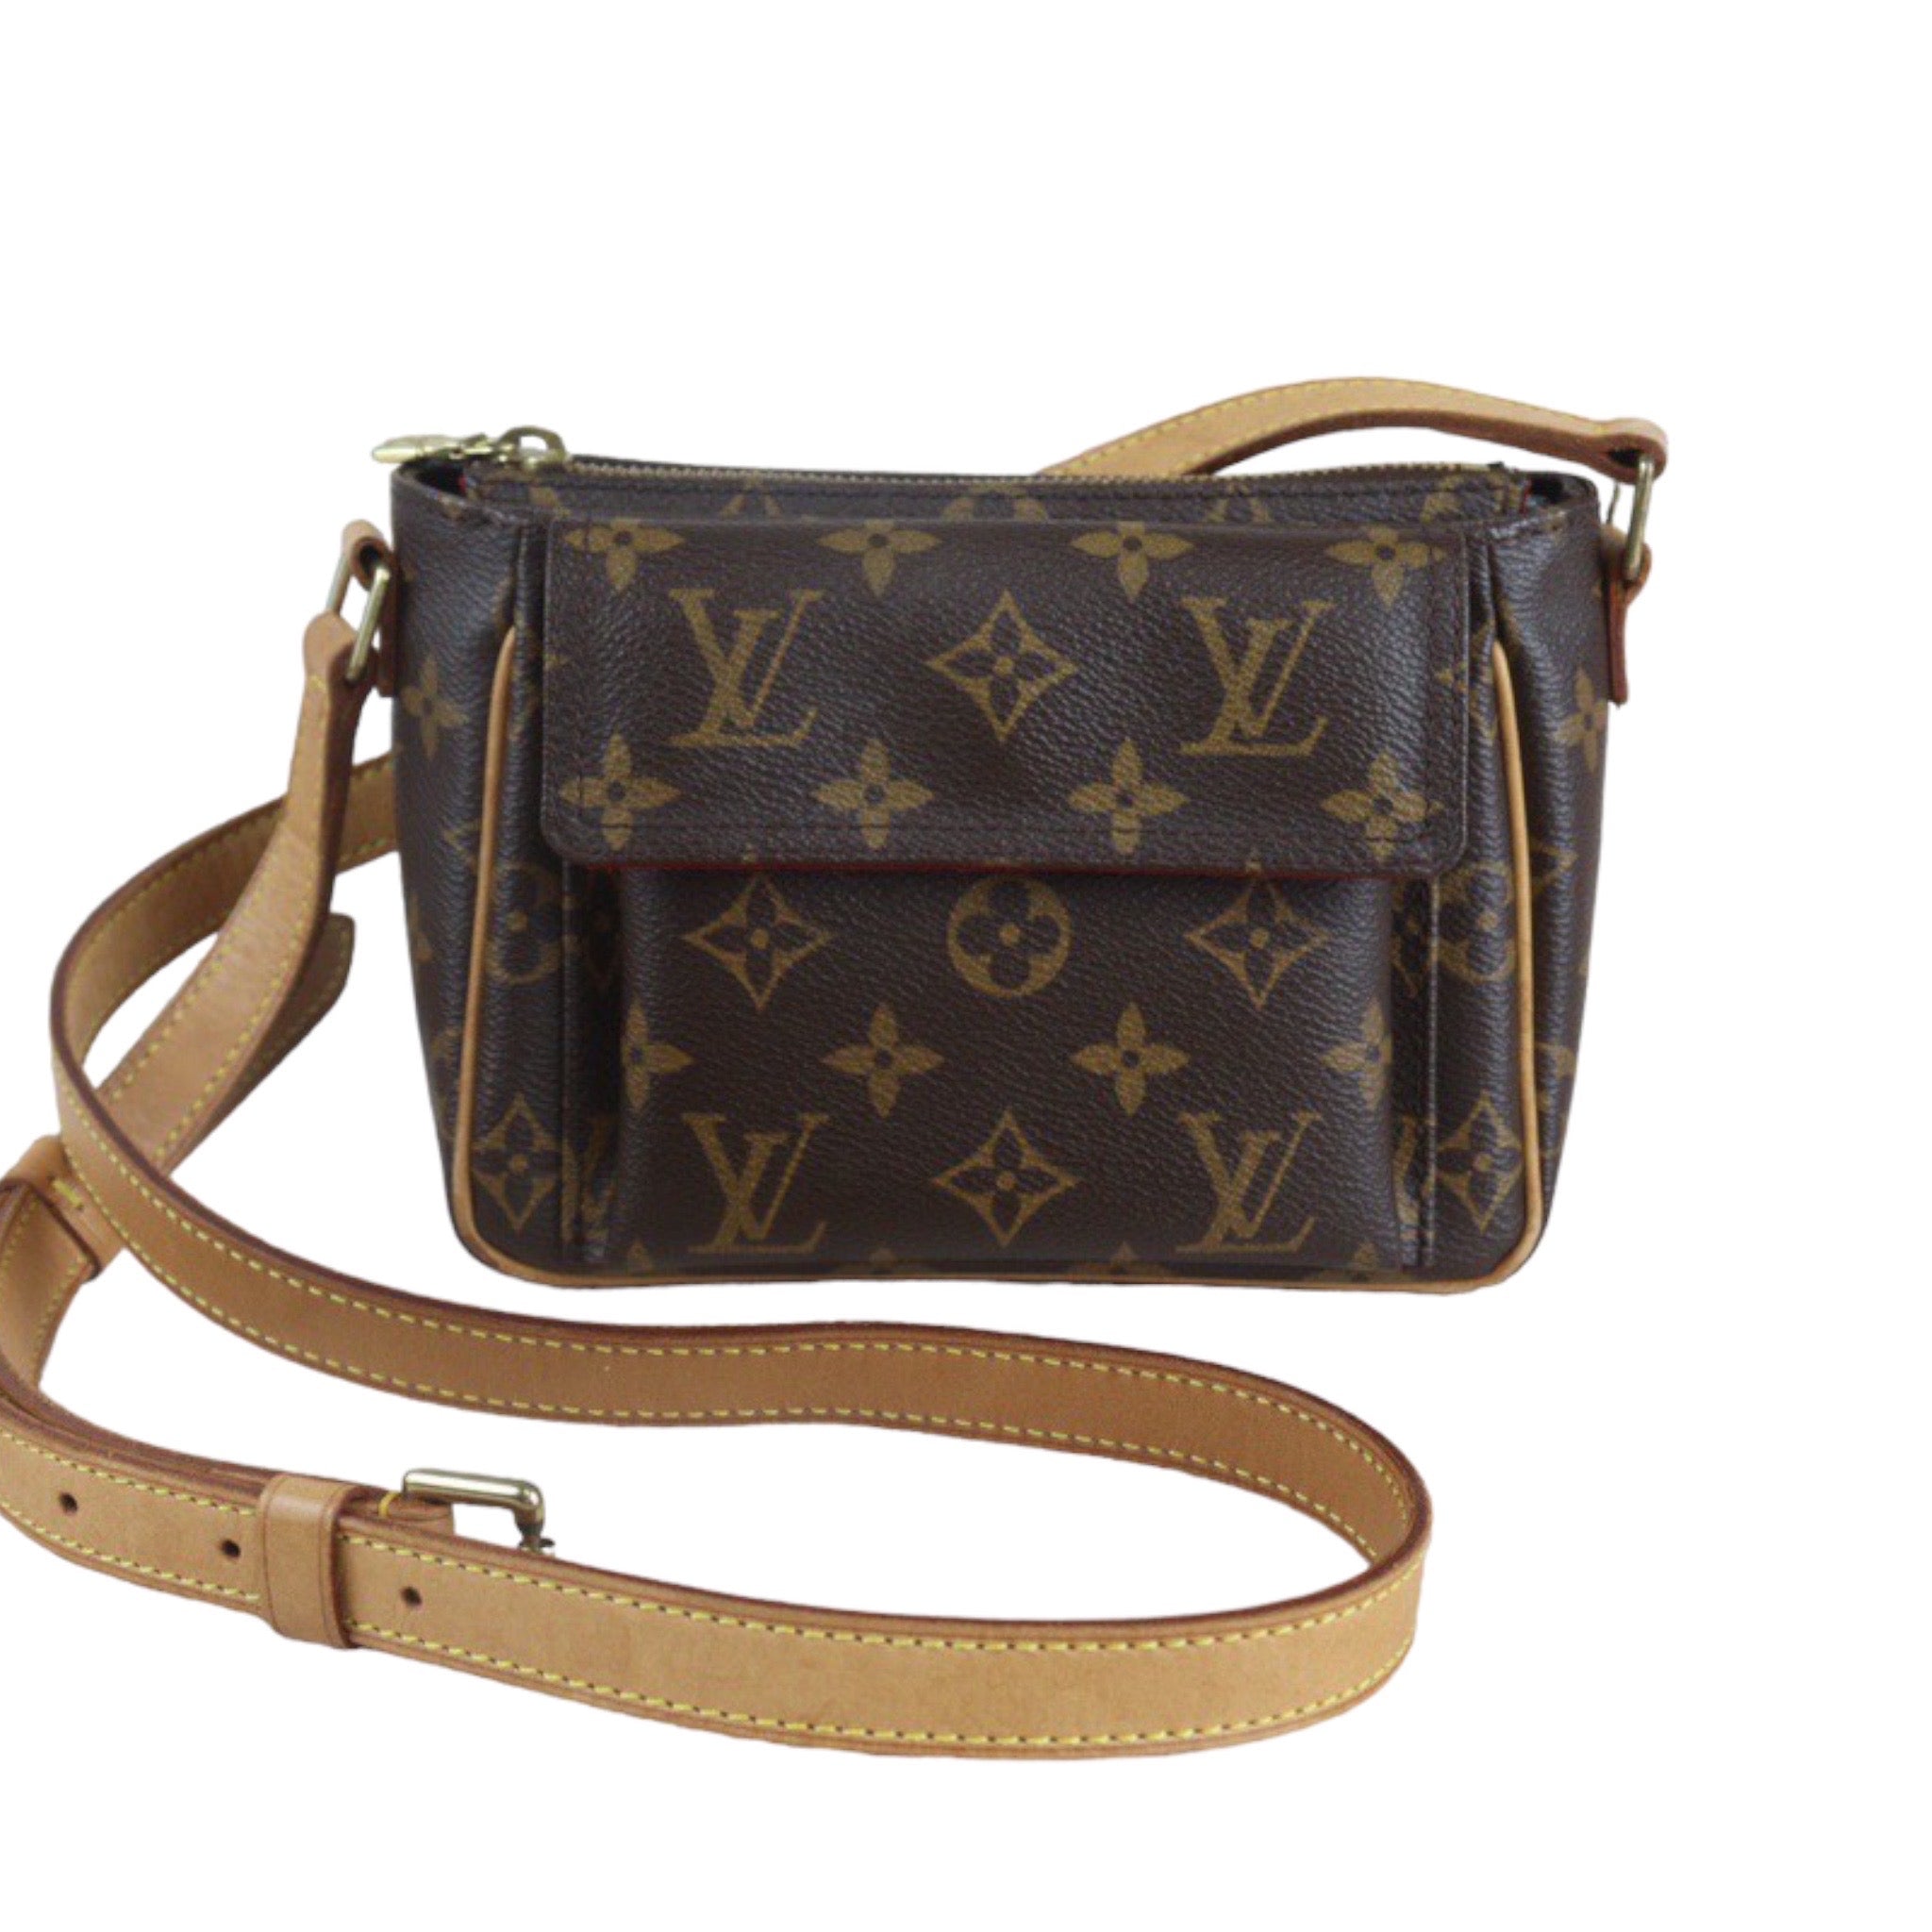 At Auction: Brand New~ Louis Vuitton Monogram Shoulder Bag + Pouch